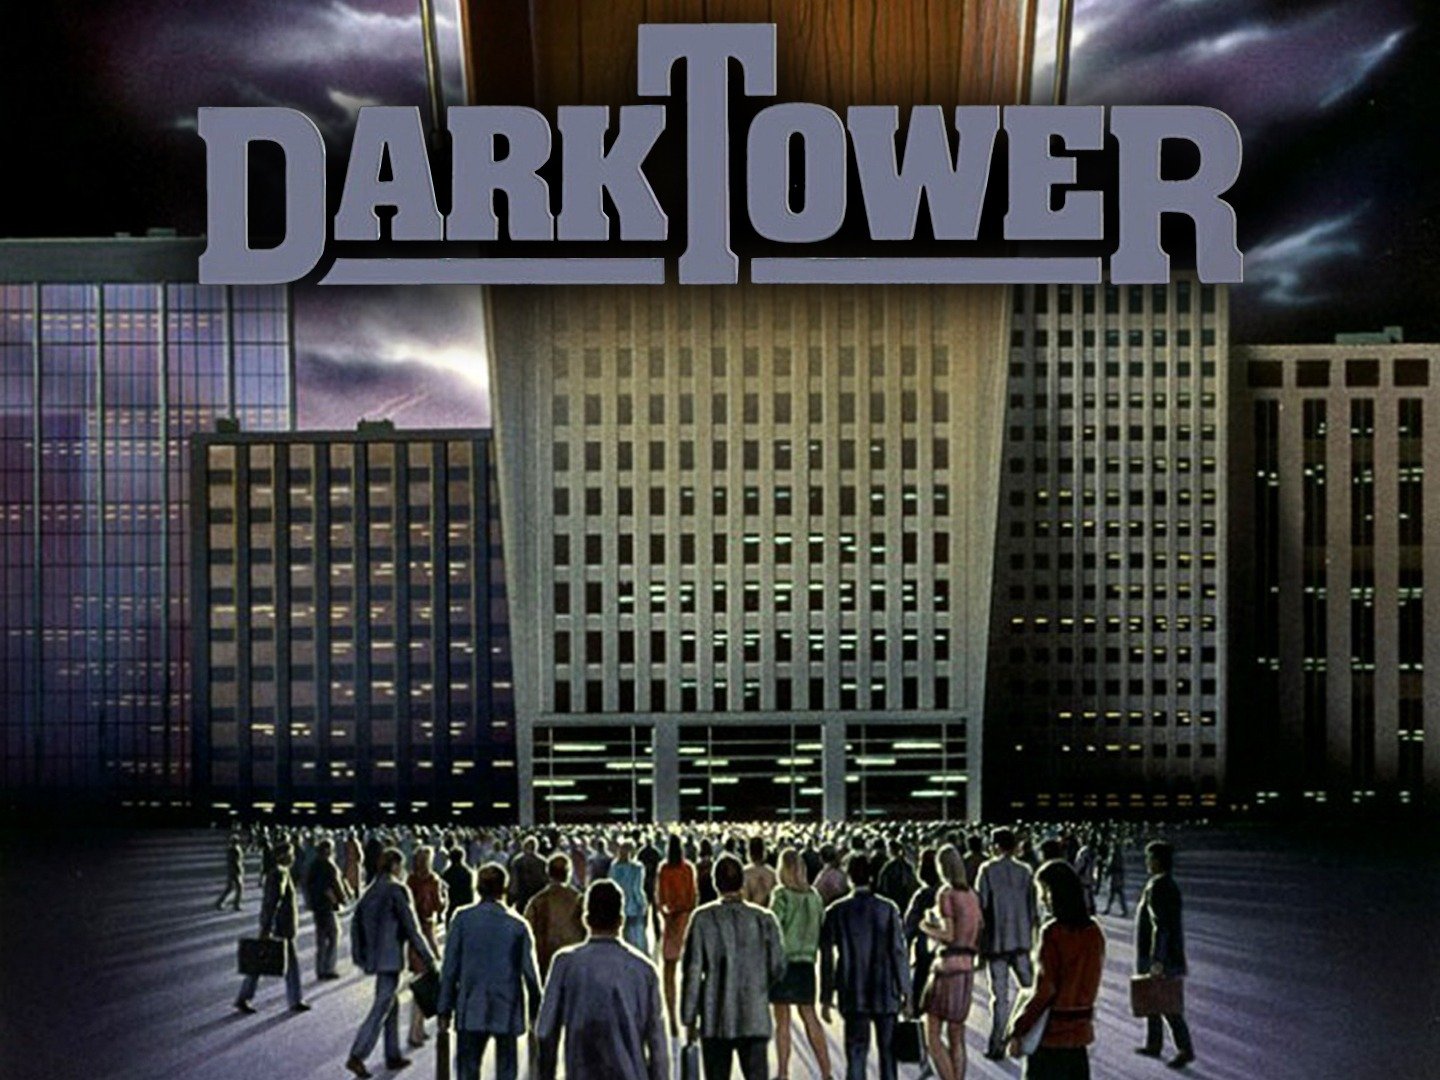 the dark tower 4.5